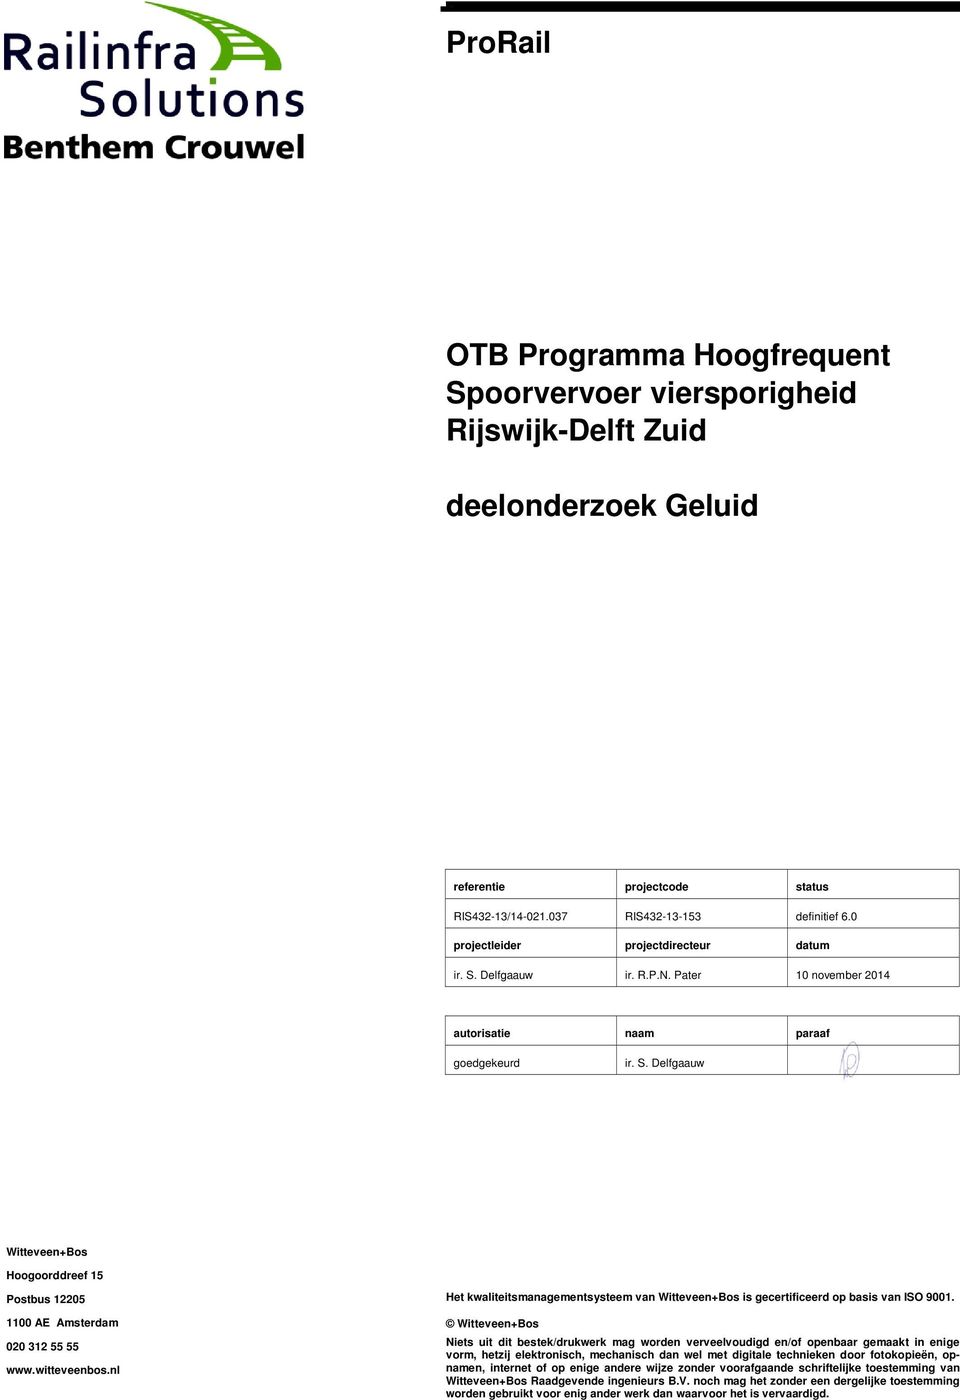 witteveenbos.nl Het kwaliteitsmanagementsysteem van Witteveen+Bos is gecertificeerd op basis van ISO 9001.